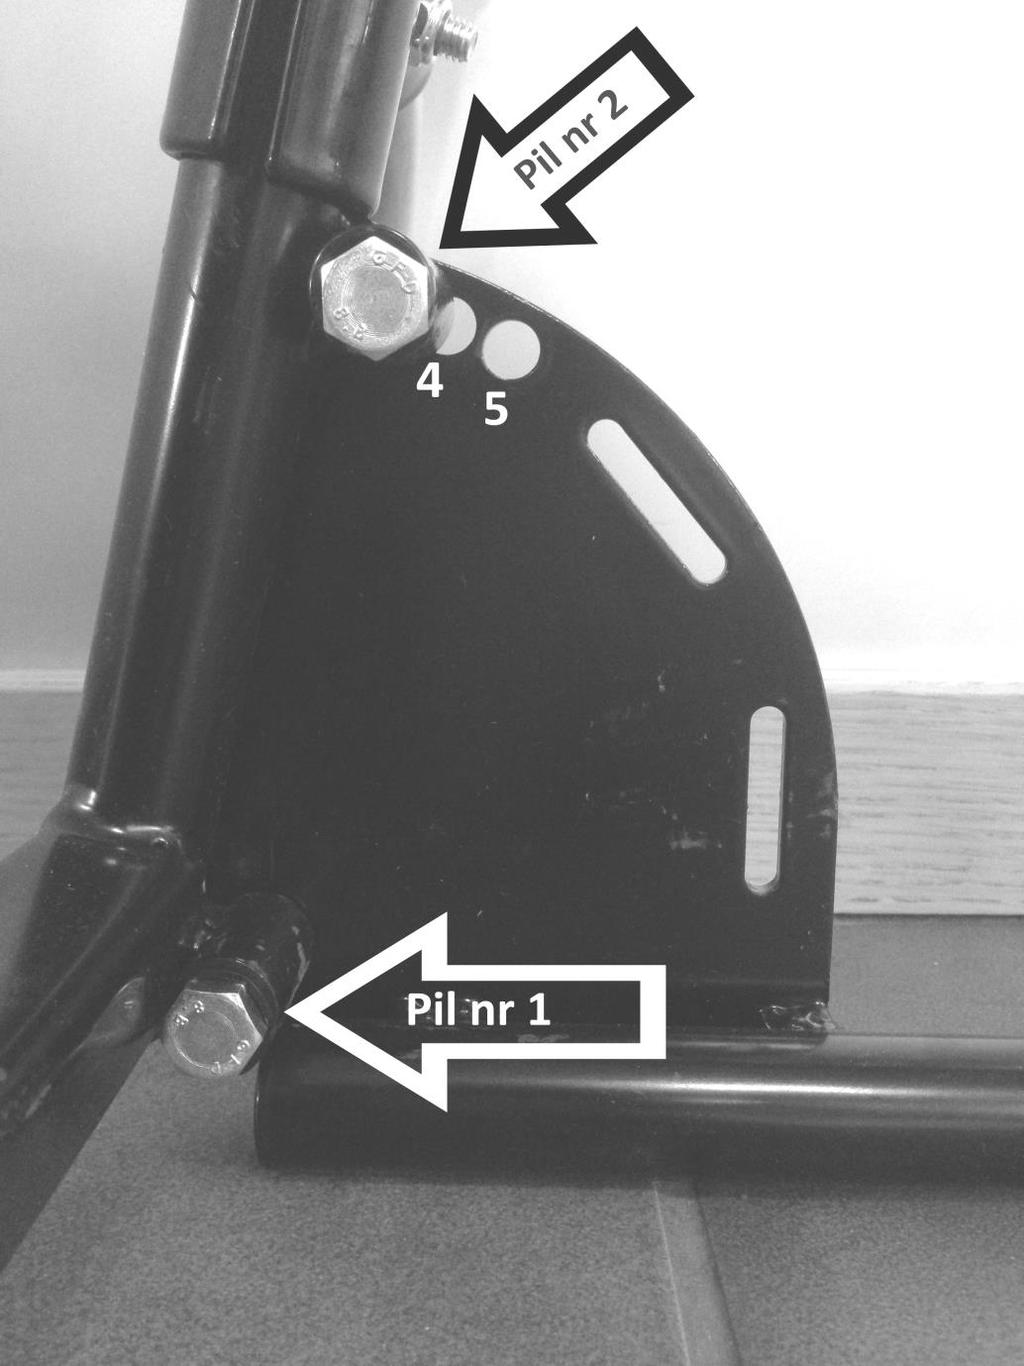 Montera ihop golvenheten med den stående dörrenheten använd skruv M8x40 både till den nedre och övre enligt pilar. Bilden visar en ihopmonterad golvram med den stående enheten från insidan.